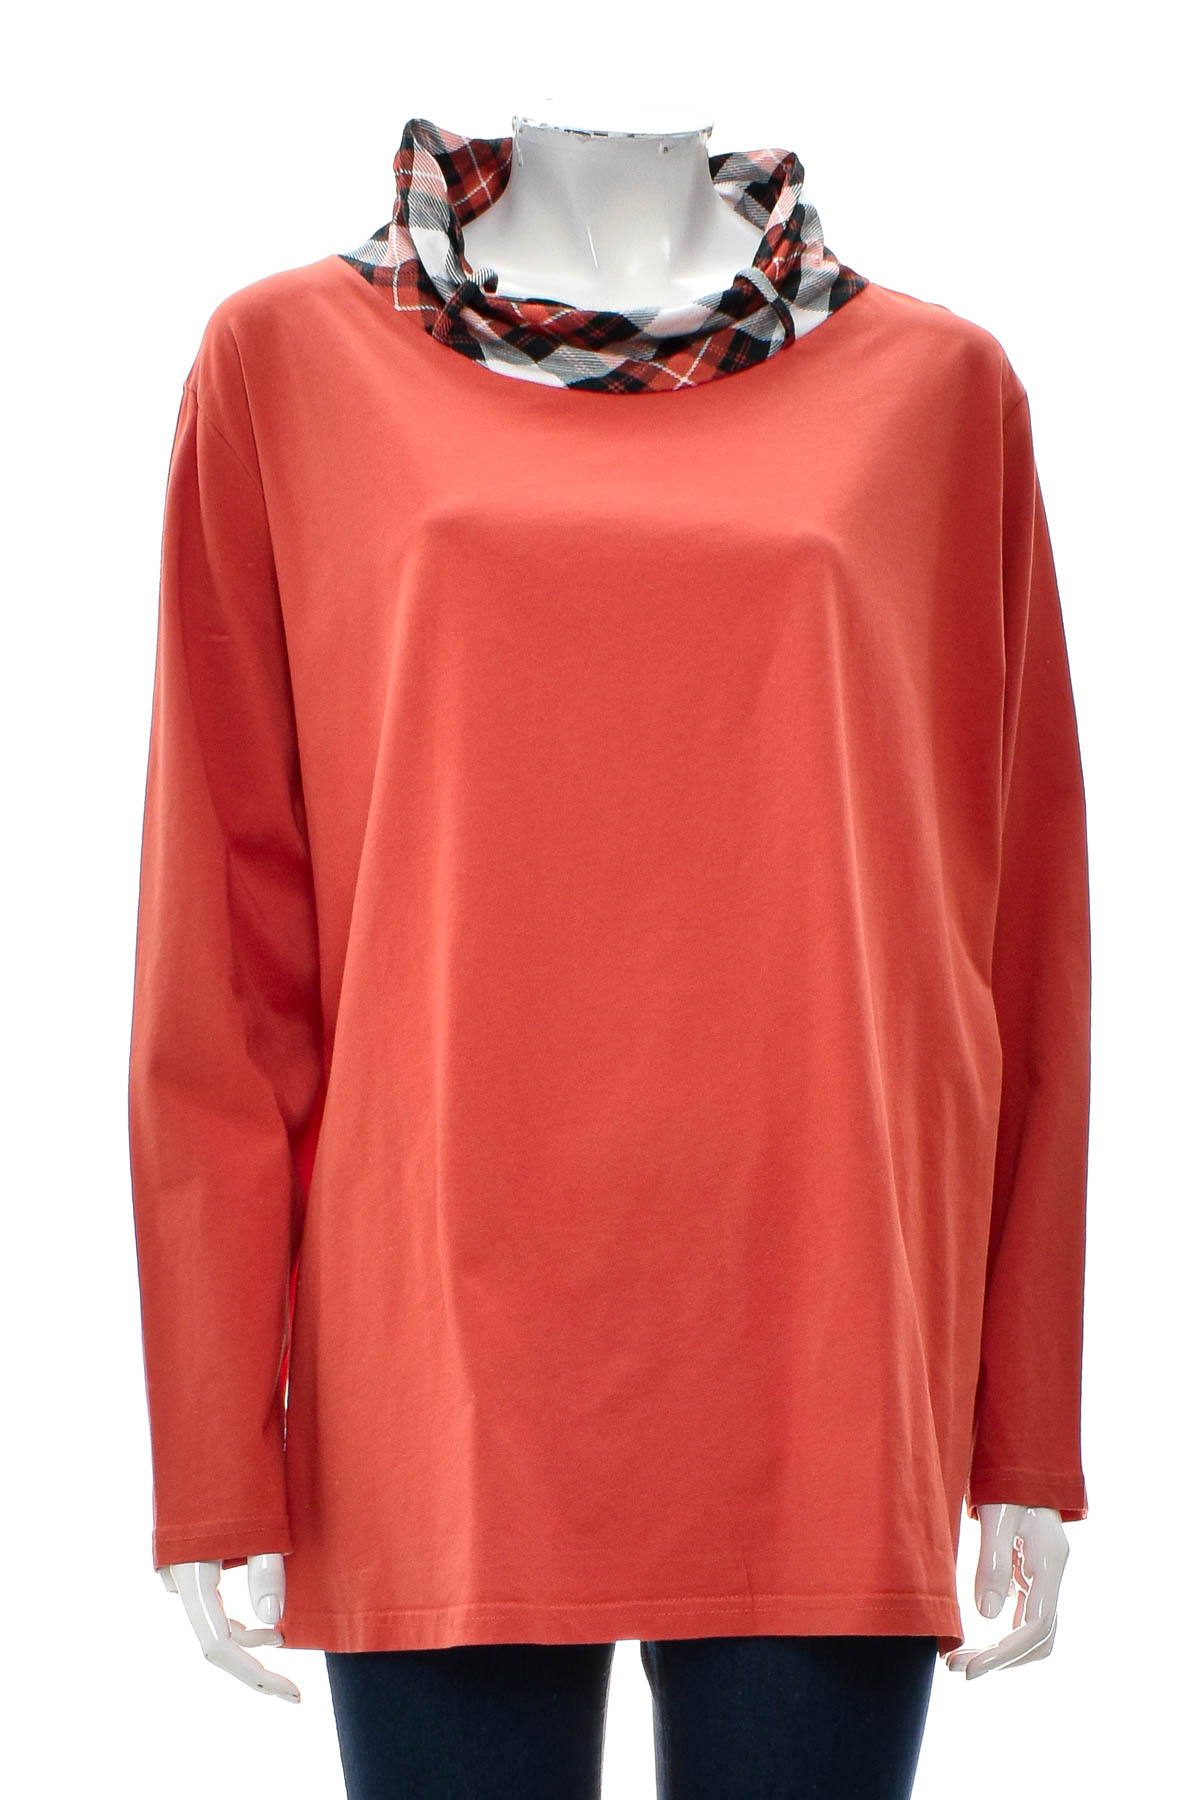 Women's blouse - AproductZ - 0